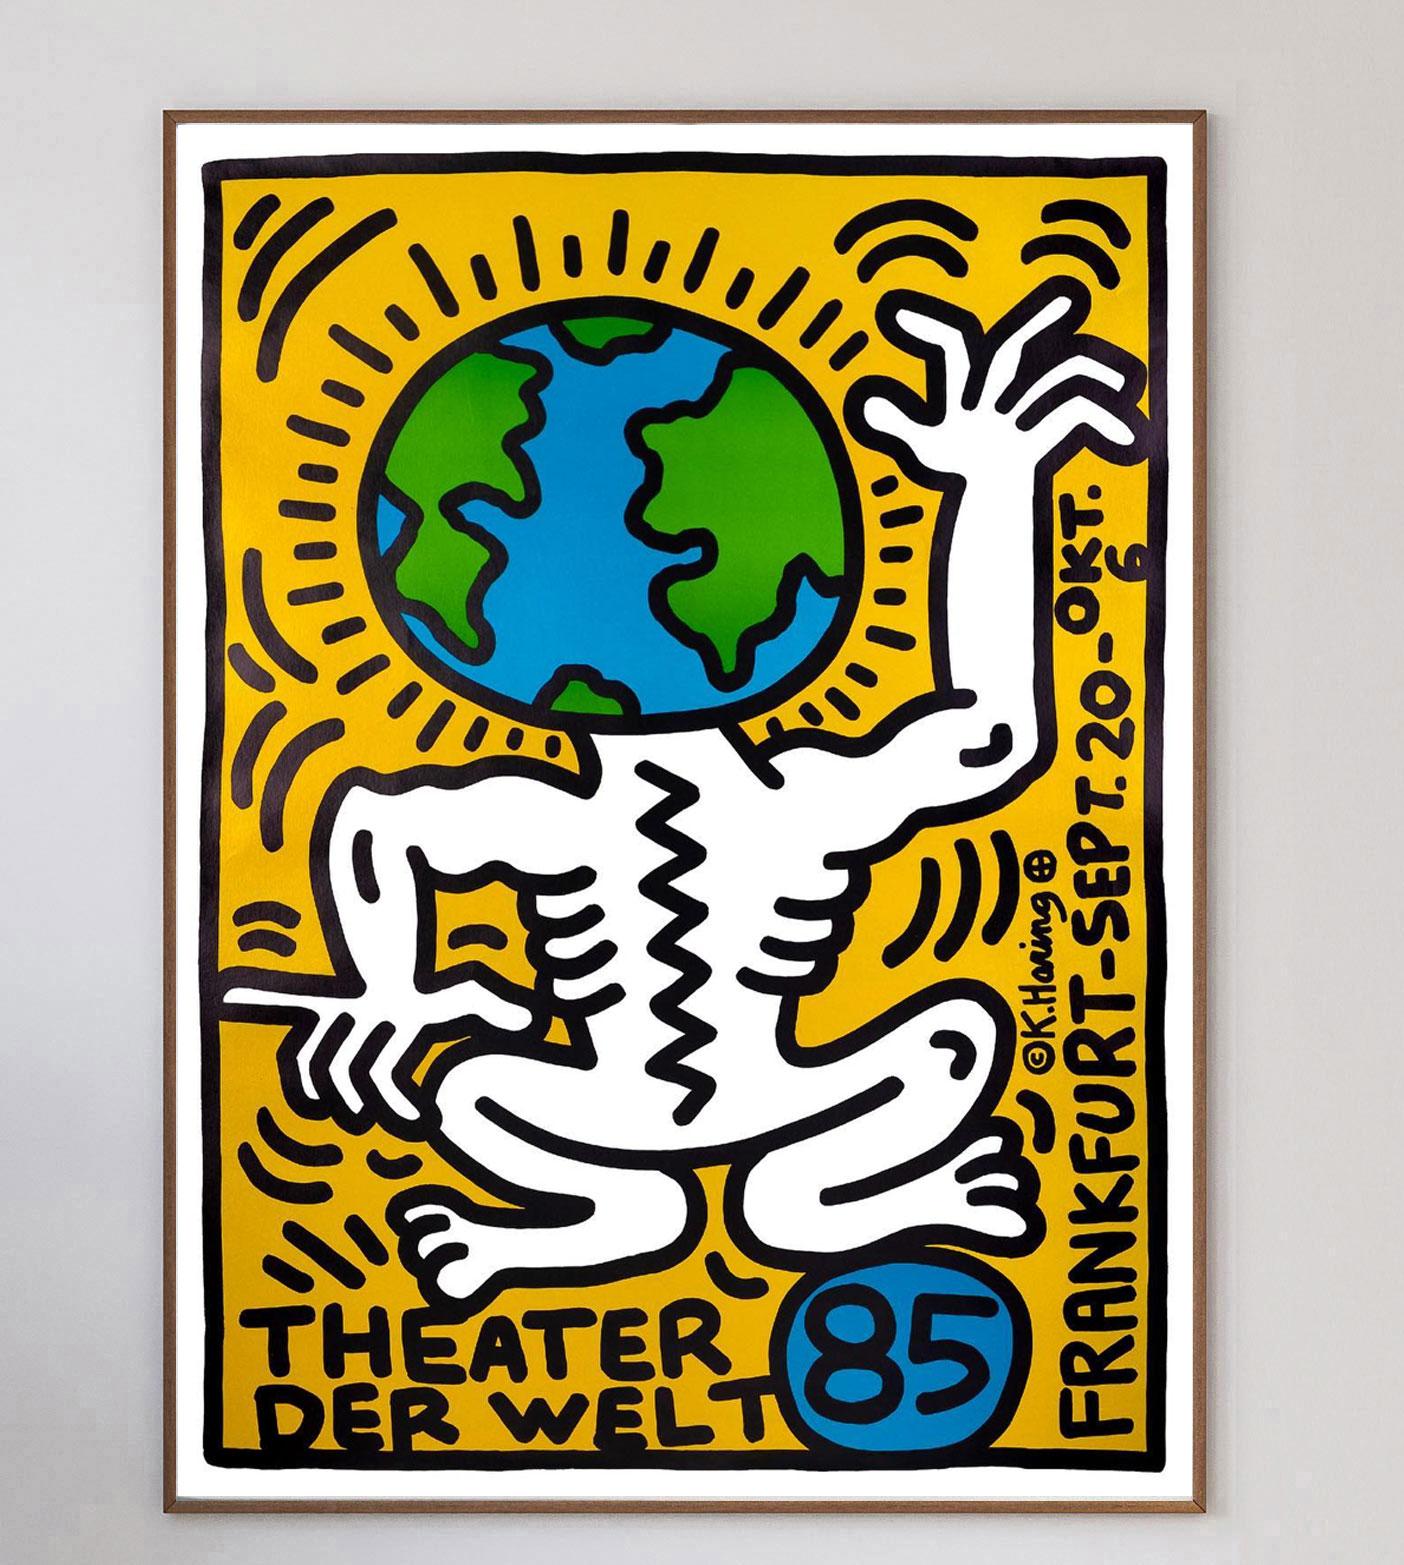 Schönes Plakat von Keith Haring für das Theater der Welt 1985 in Frankfurt. Das Internationale Theaterfestival findet seit 1993 alle drei Jahre statt, davor war es etwas unregelmäßiger, denn die letzte Veranstaltung vor Frankfurt 1985 fand 1981